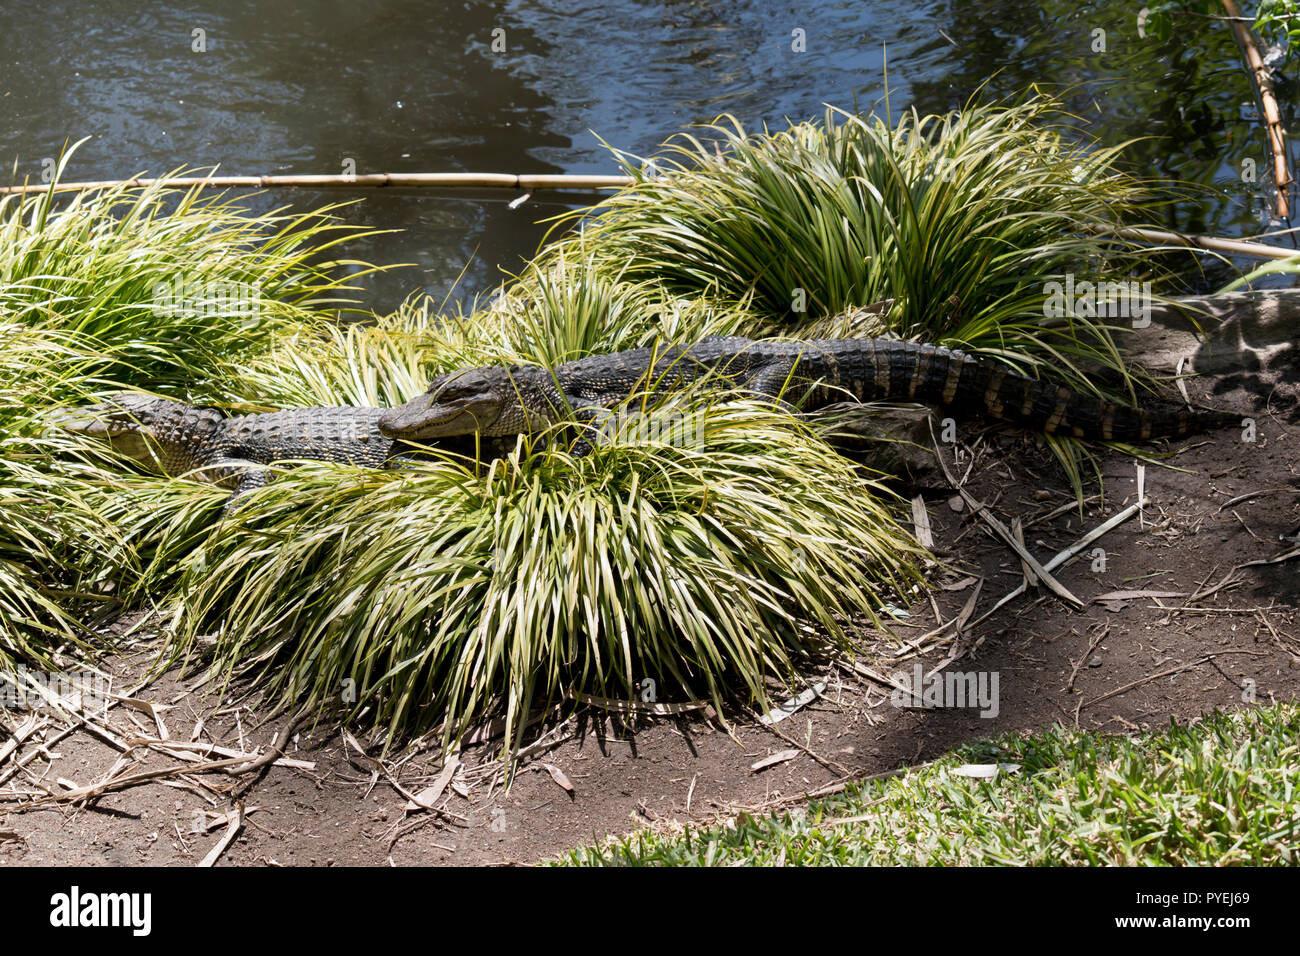 Les deux jeunes alligators se reposent sur l'herbe Banque D'Images